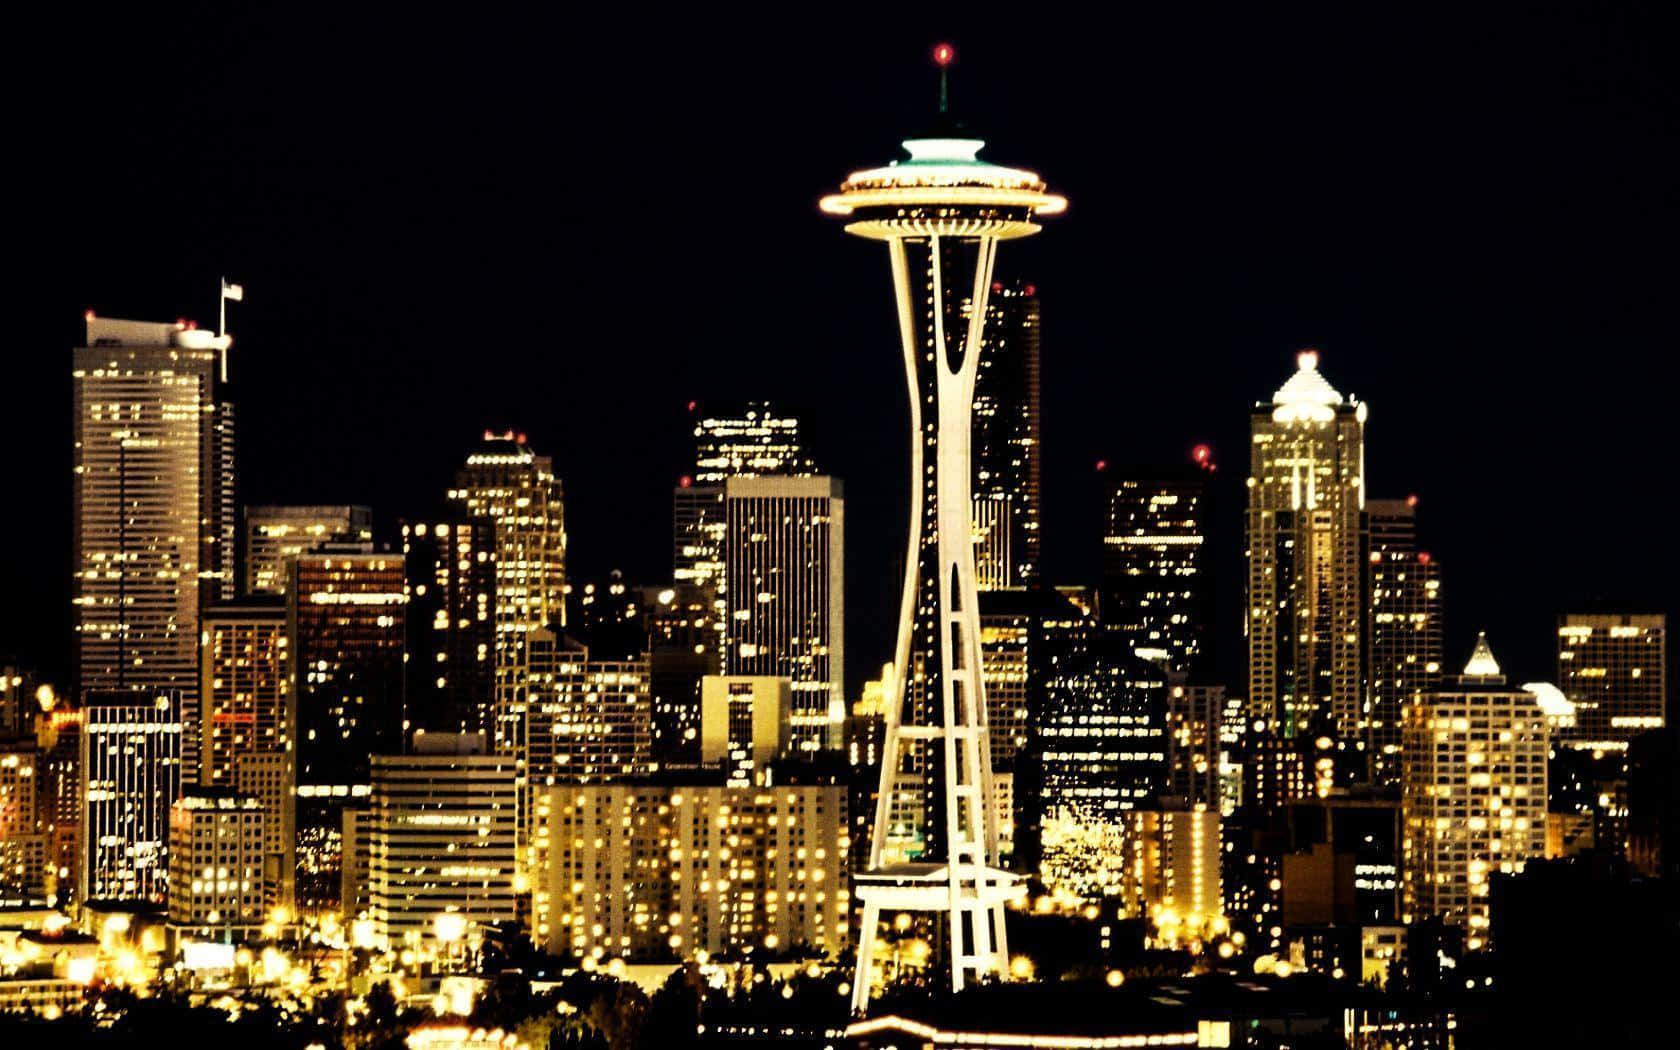 Lamigliore Immagine Di Sfondo Di Seattle Con Un'immagine Della Space Needle In Nero E Giallo Dorato.